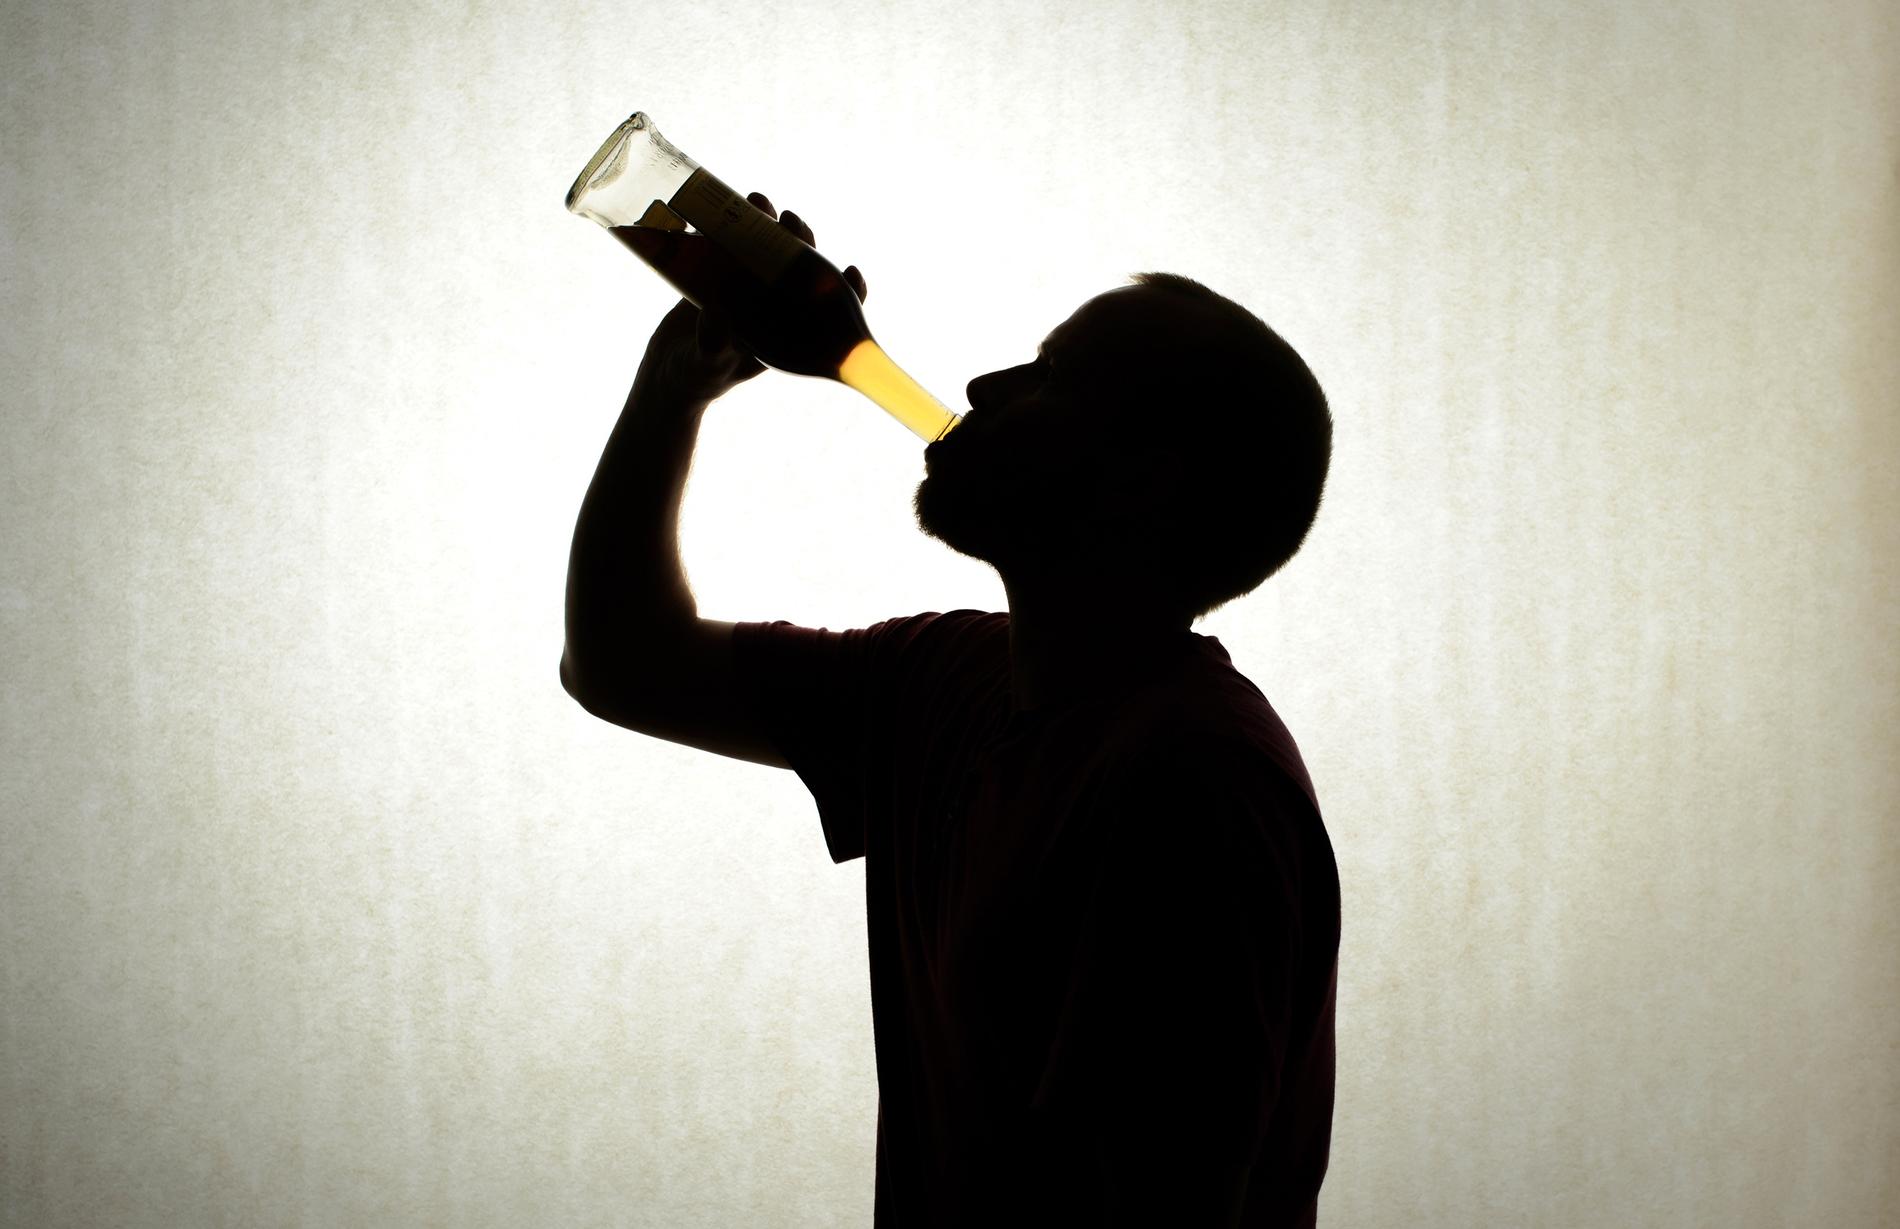 Coronakrisen har ökat behovet av samtalsstöd för alkoholkonsumtion – en folkhälsobomb i smittans skugga.